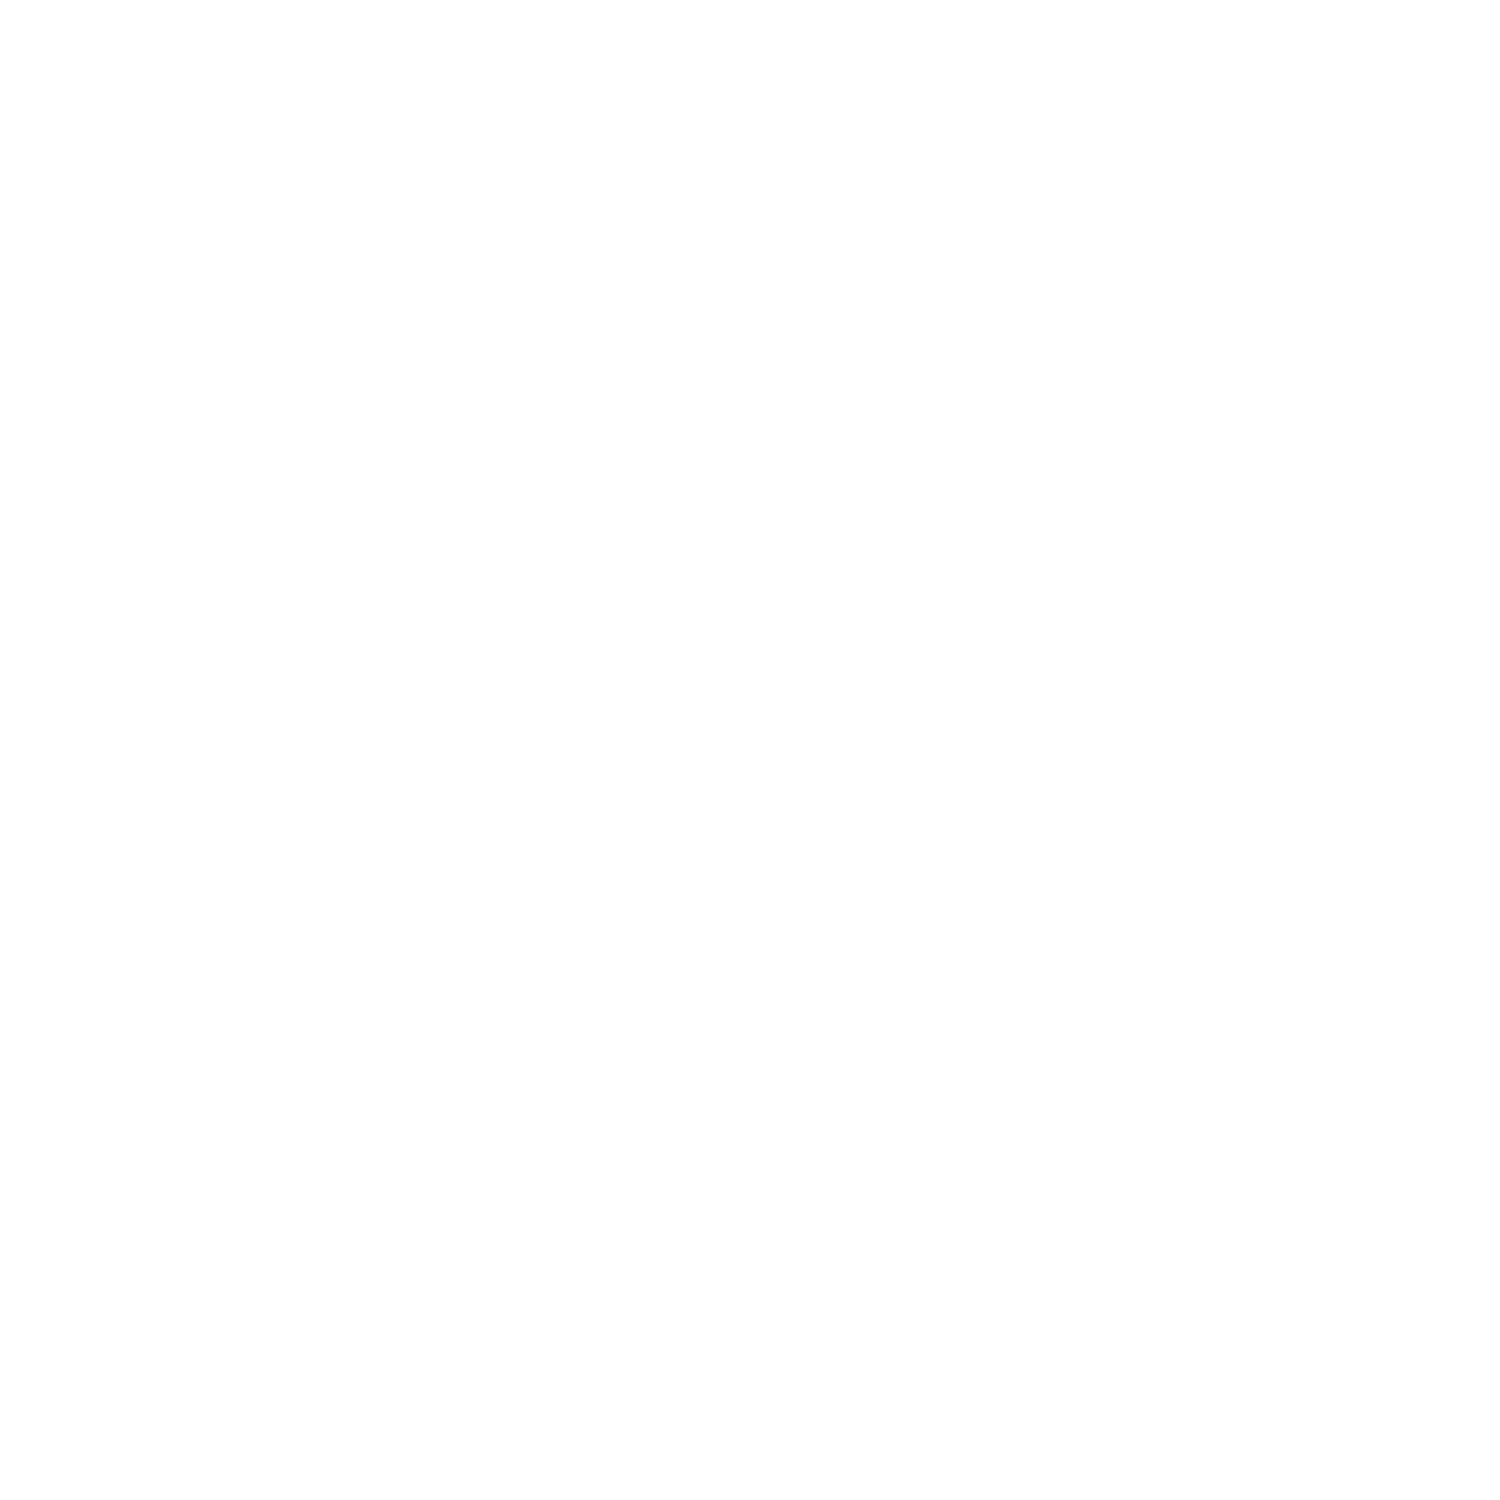 Mousehole Harbour Lights